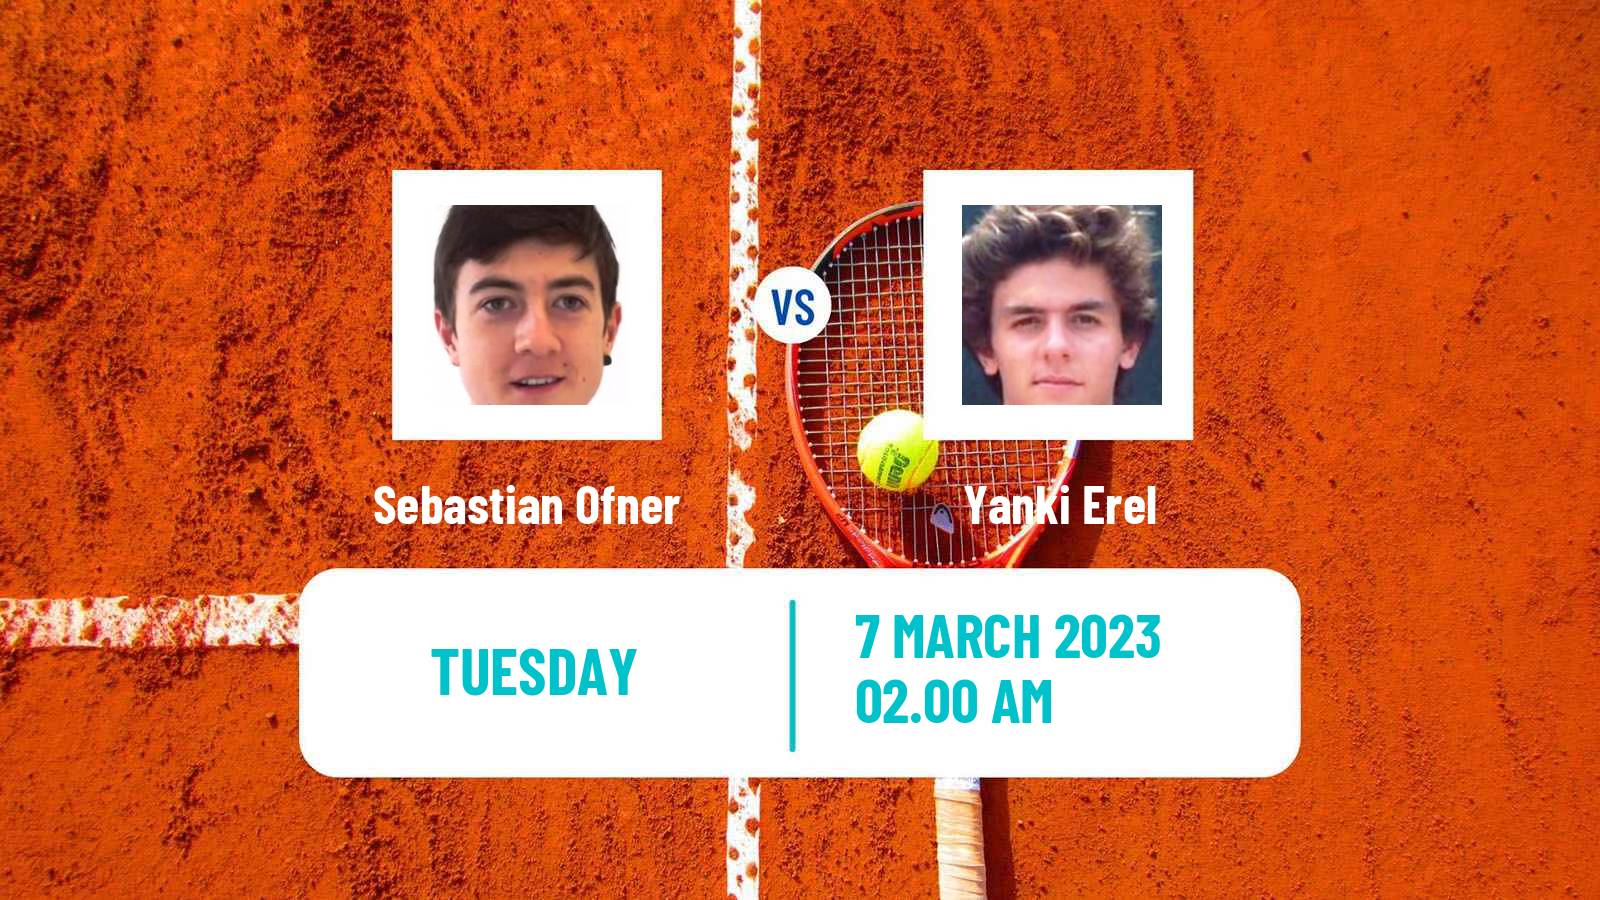 Tennis ATP Challenger Sebastian Ofner - Yanki Erel